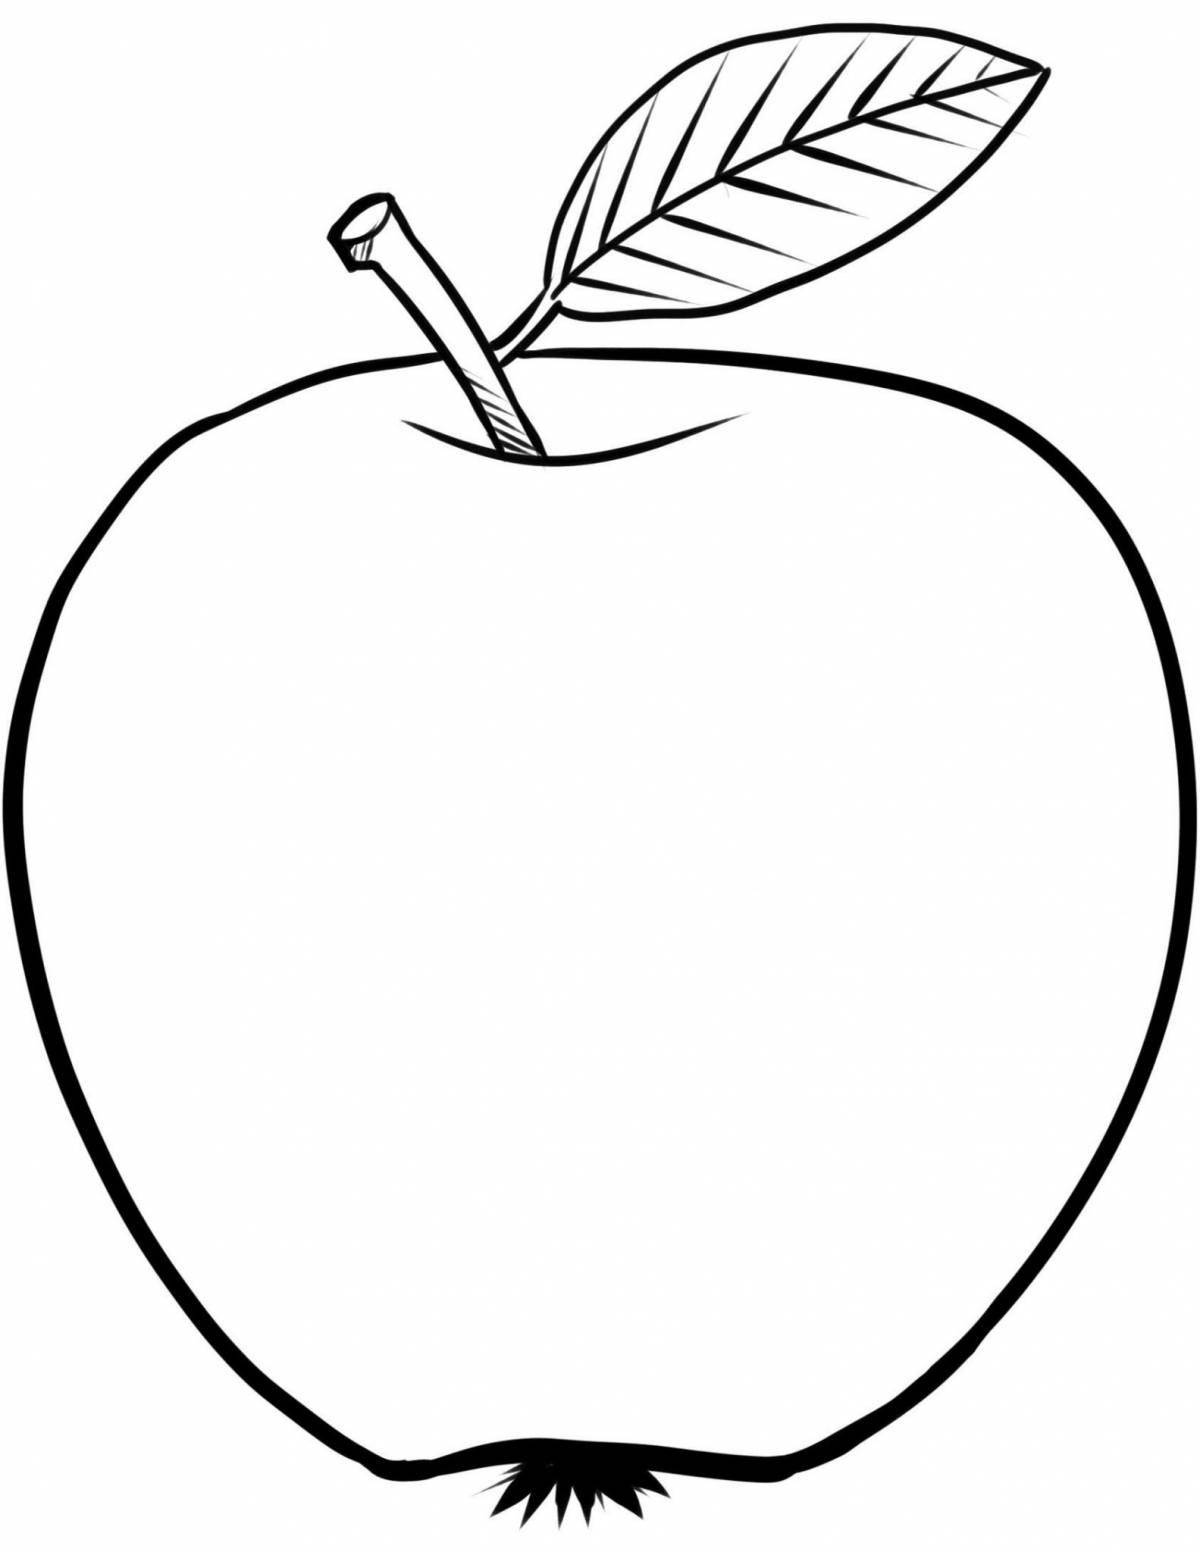 Увлекательная раскраска apple для детей